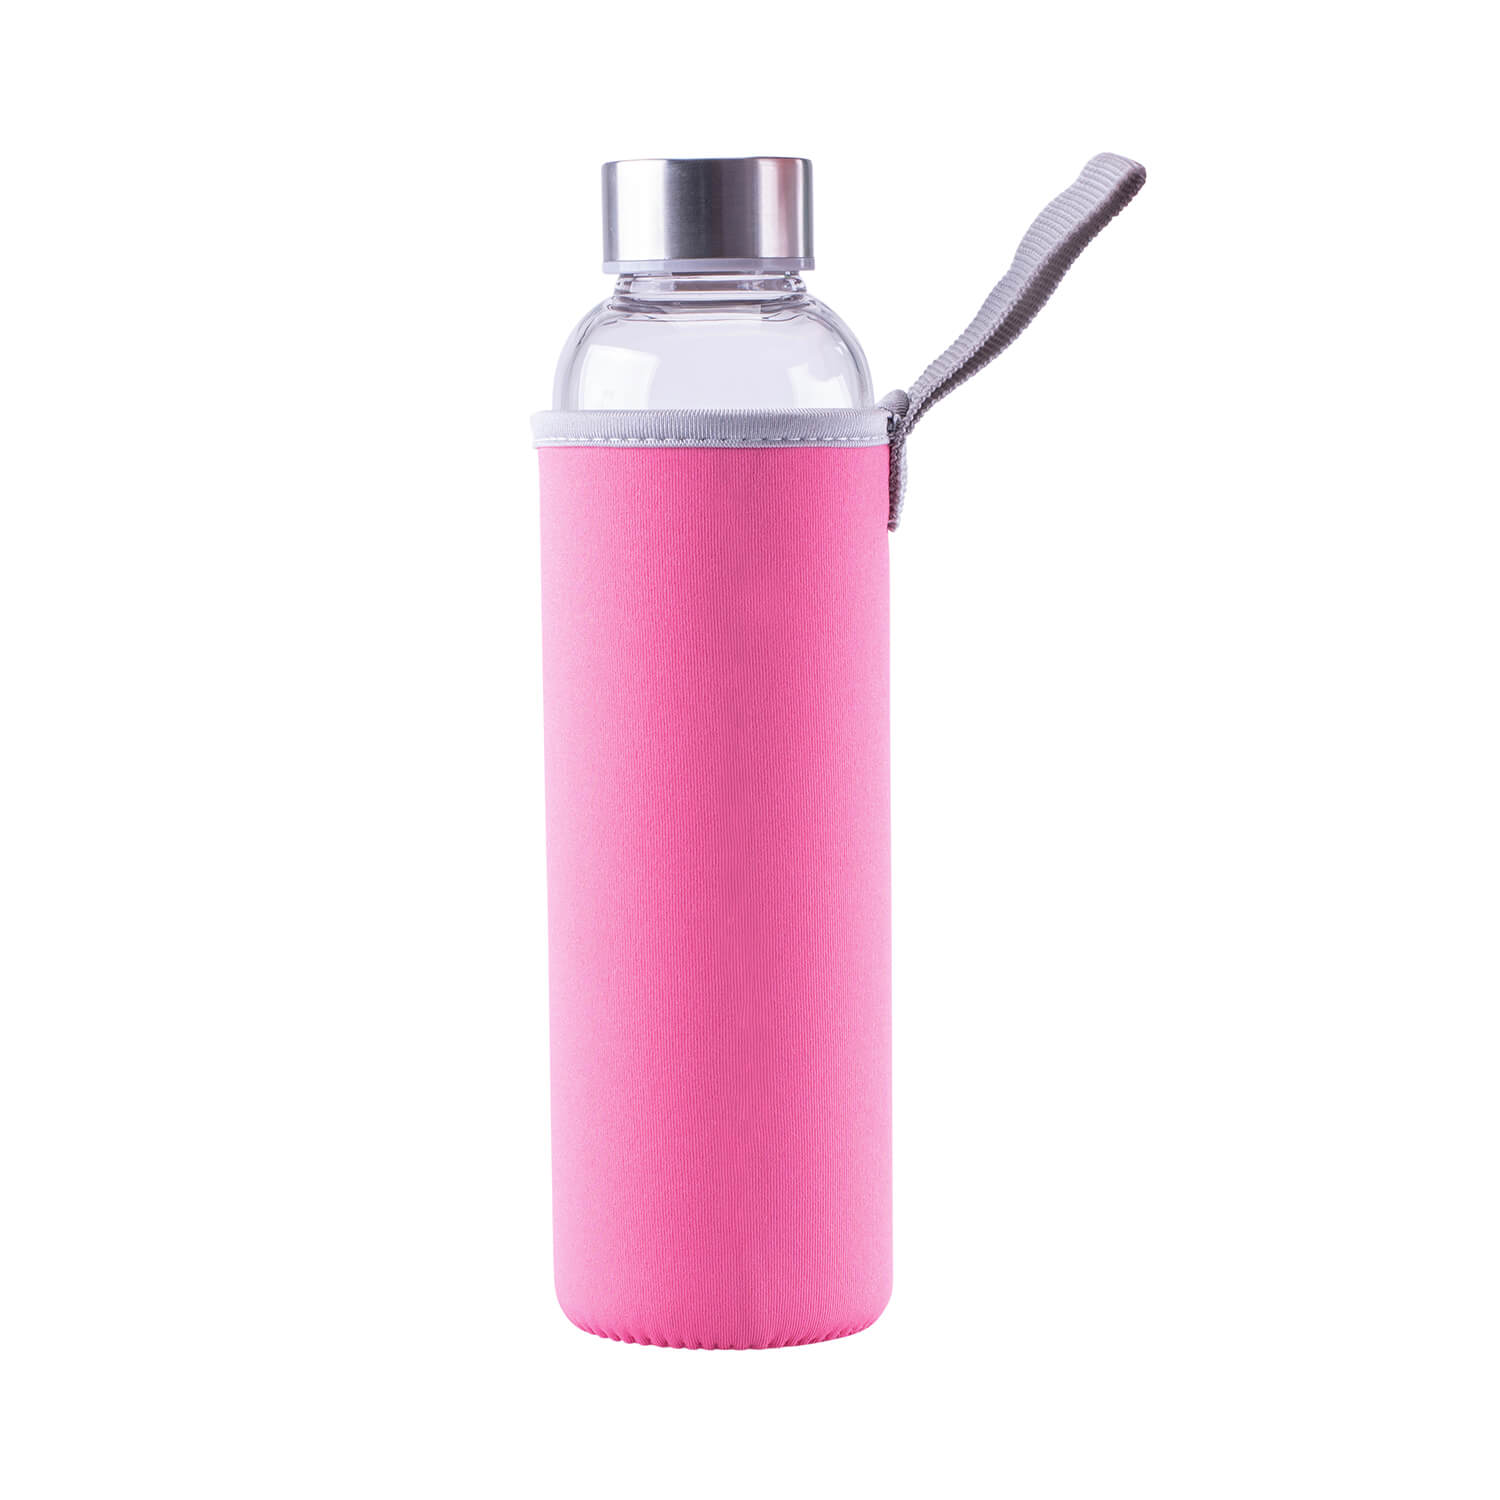 Steuber Glastrinkflasche mit Tasche und Tragelasche, Borosilikatglas mit Edelstahldeckel, 1000 ml, rosa